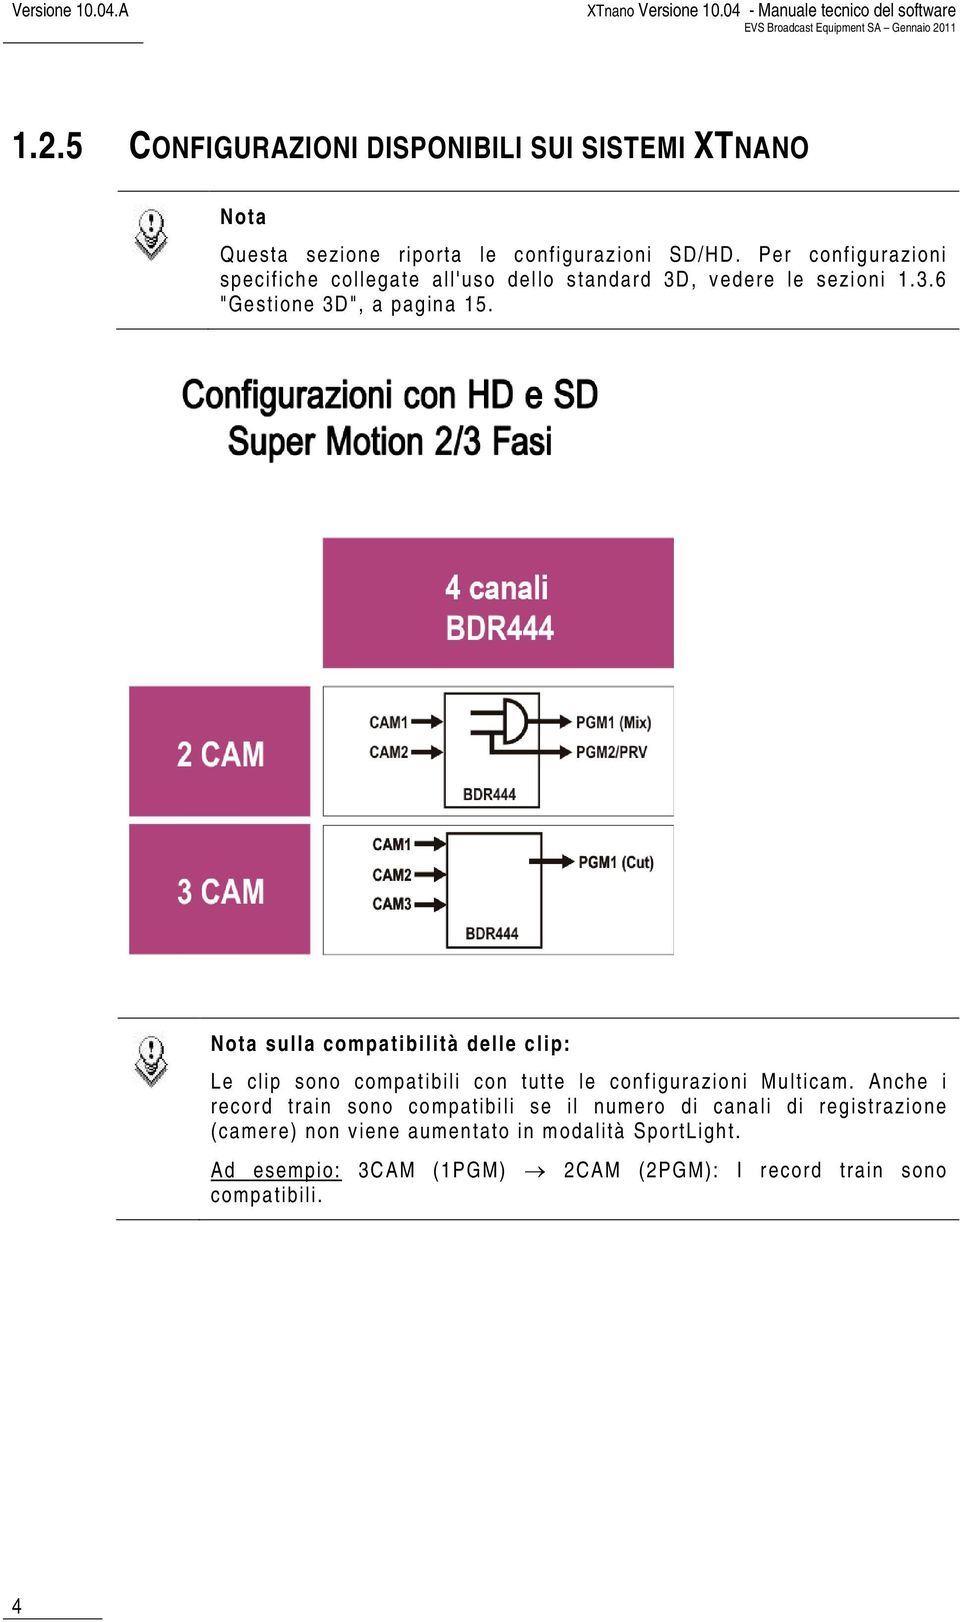 Per configurazioni specifiche collegate all'uso dello standard 3D, vedere le sezioni 1.3.6 "Gestione 3D", a pagina 15.